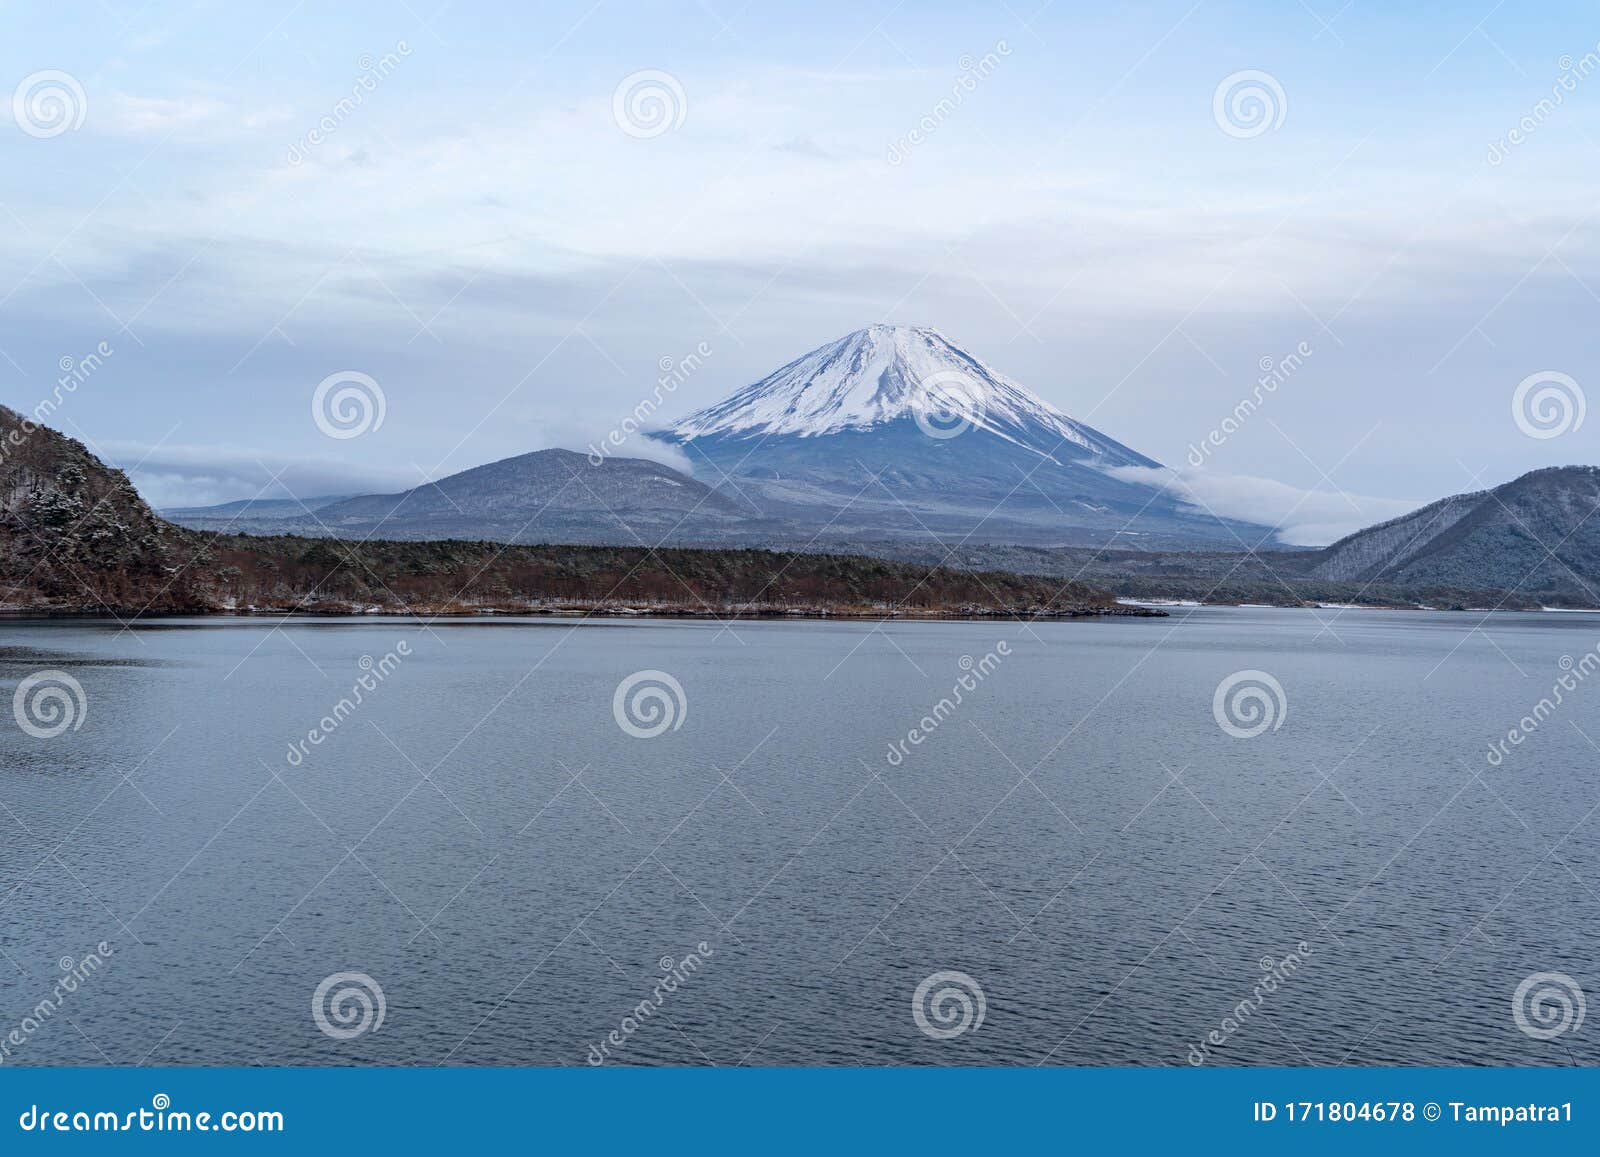 西子湖 富士五湖日本山梨市藤川口子附近冬季雪富士山自然景观库存照片 图片包括有本质 春天